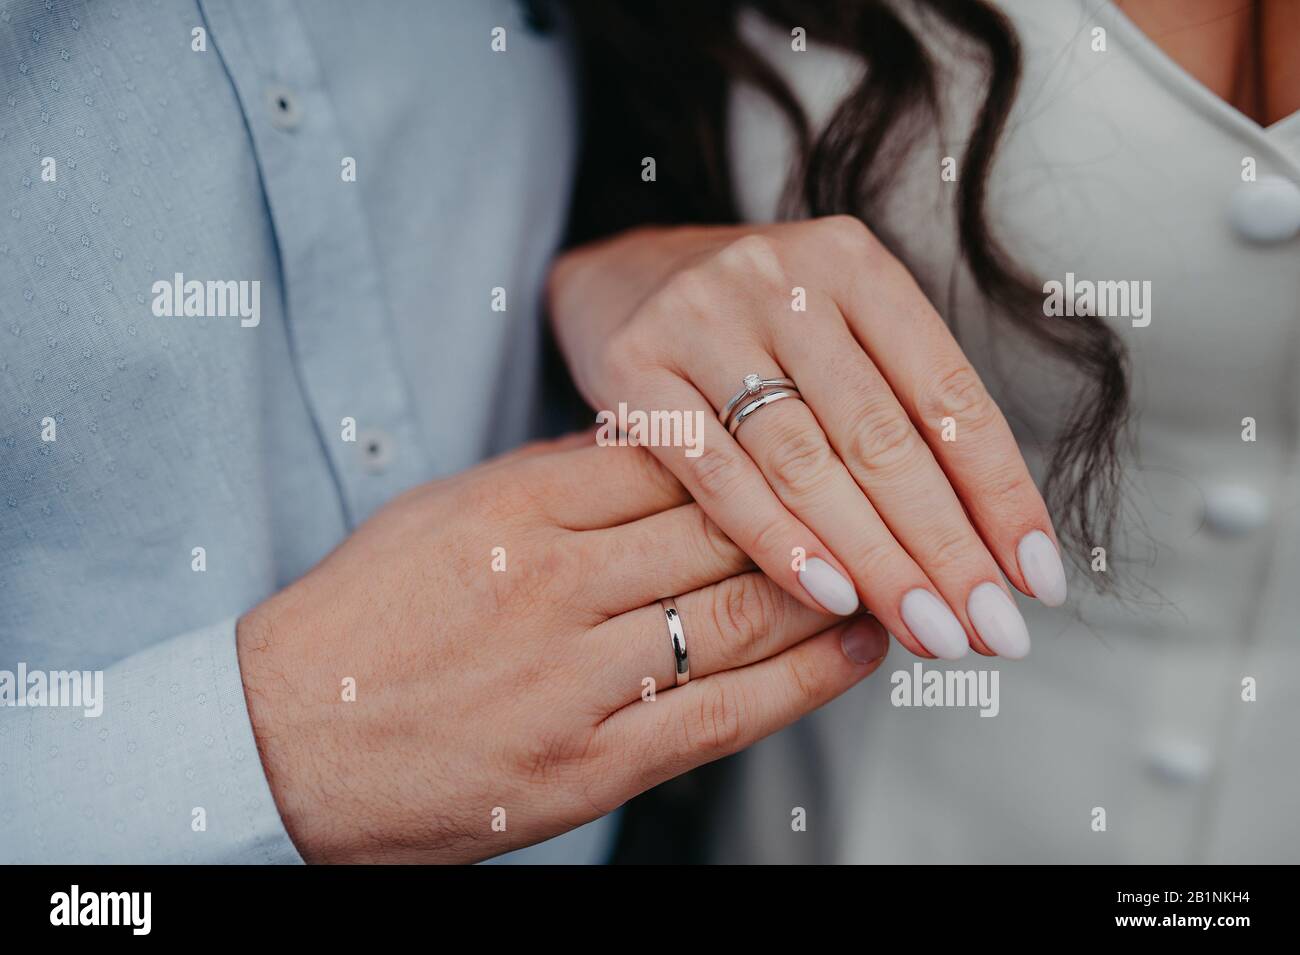 Hand auf die Hand der Frau und des Bräutigams, Engagement glatte weiße  goldene Ringe auf die Finger, auf den Finger der Frau ein Verlobungsring  Stockfotografie - Alamy